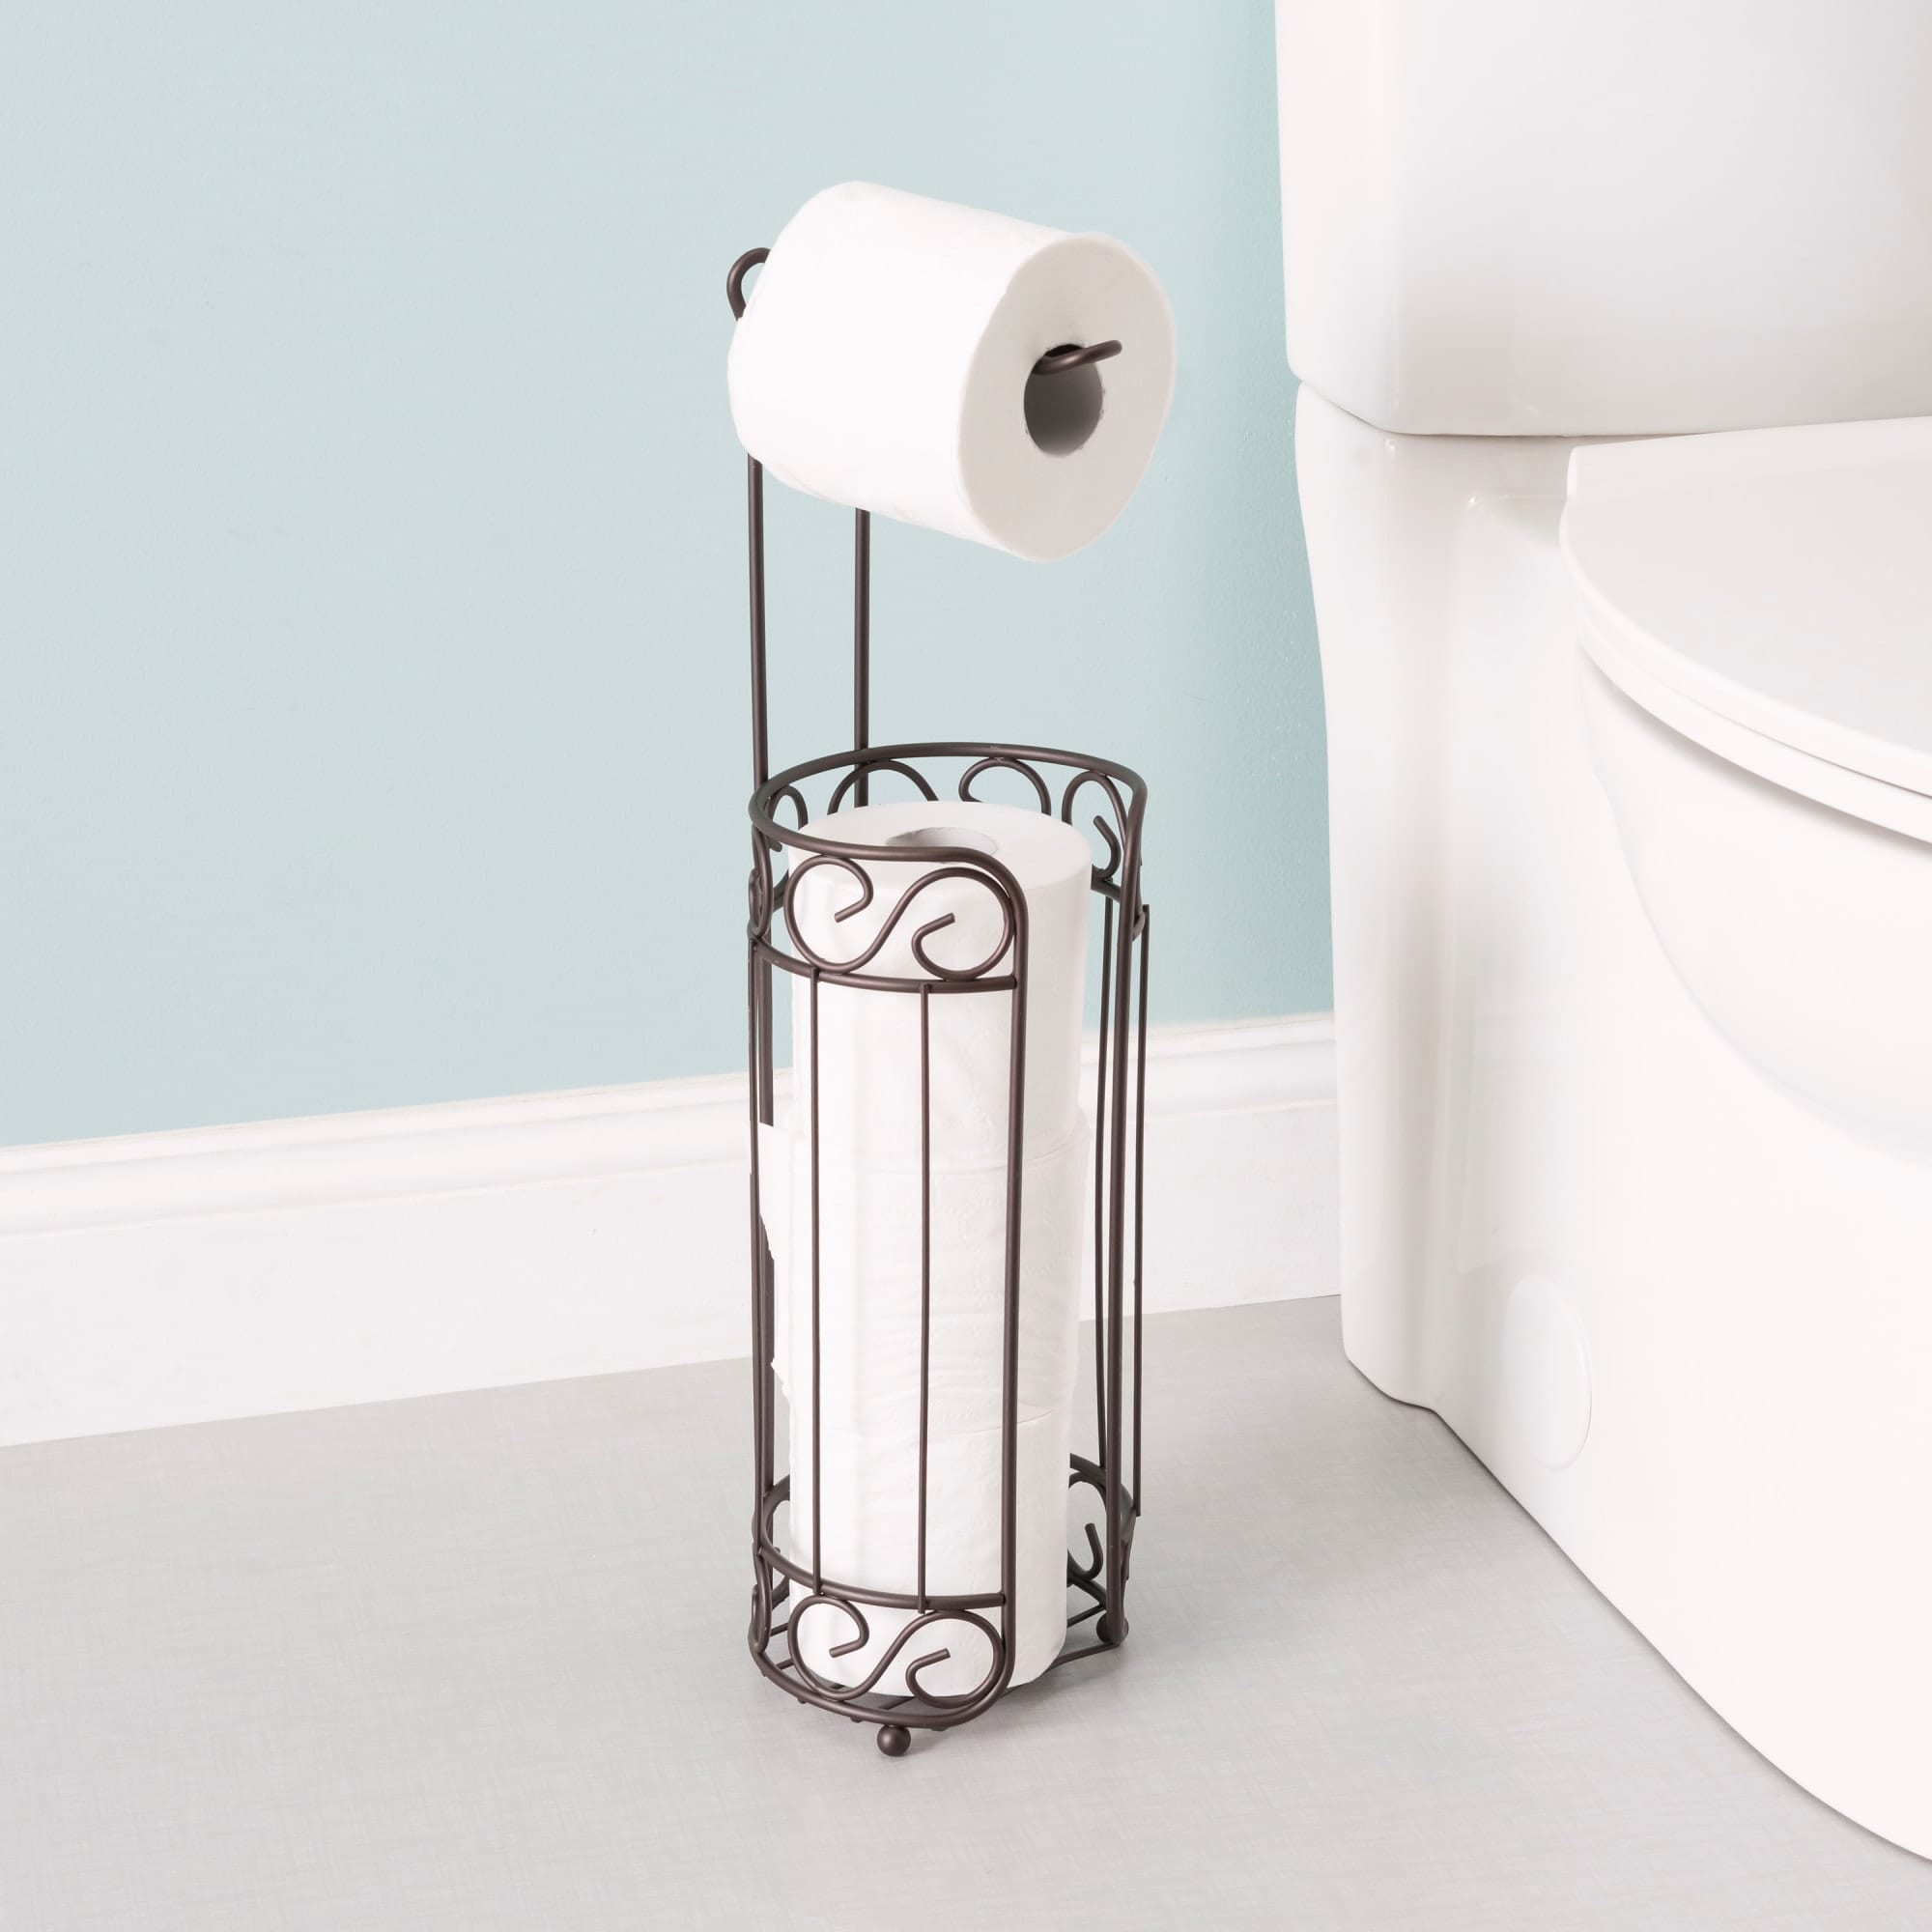 Home Basics Bronze Toilet Paper Holder and Dispenser $10.00 EACH, CASE PACK OF 12